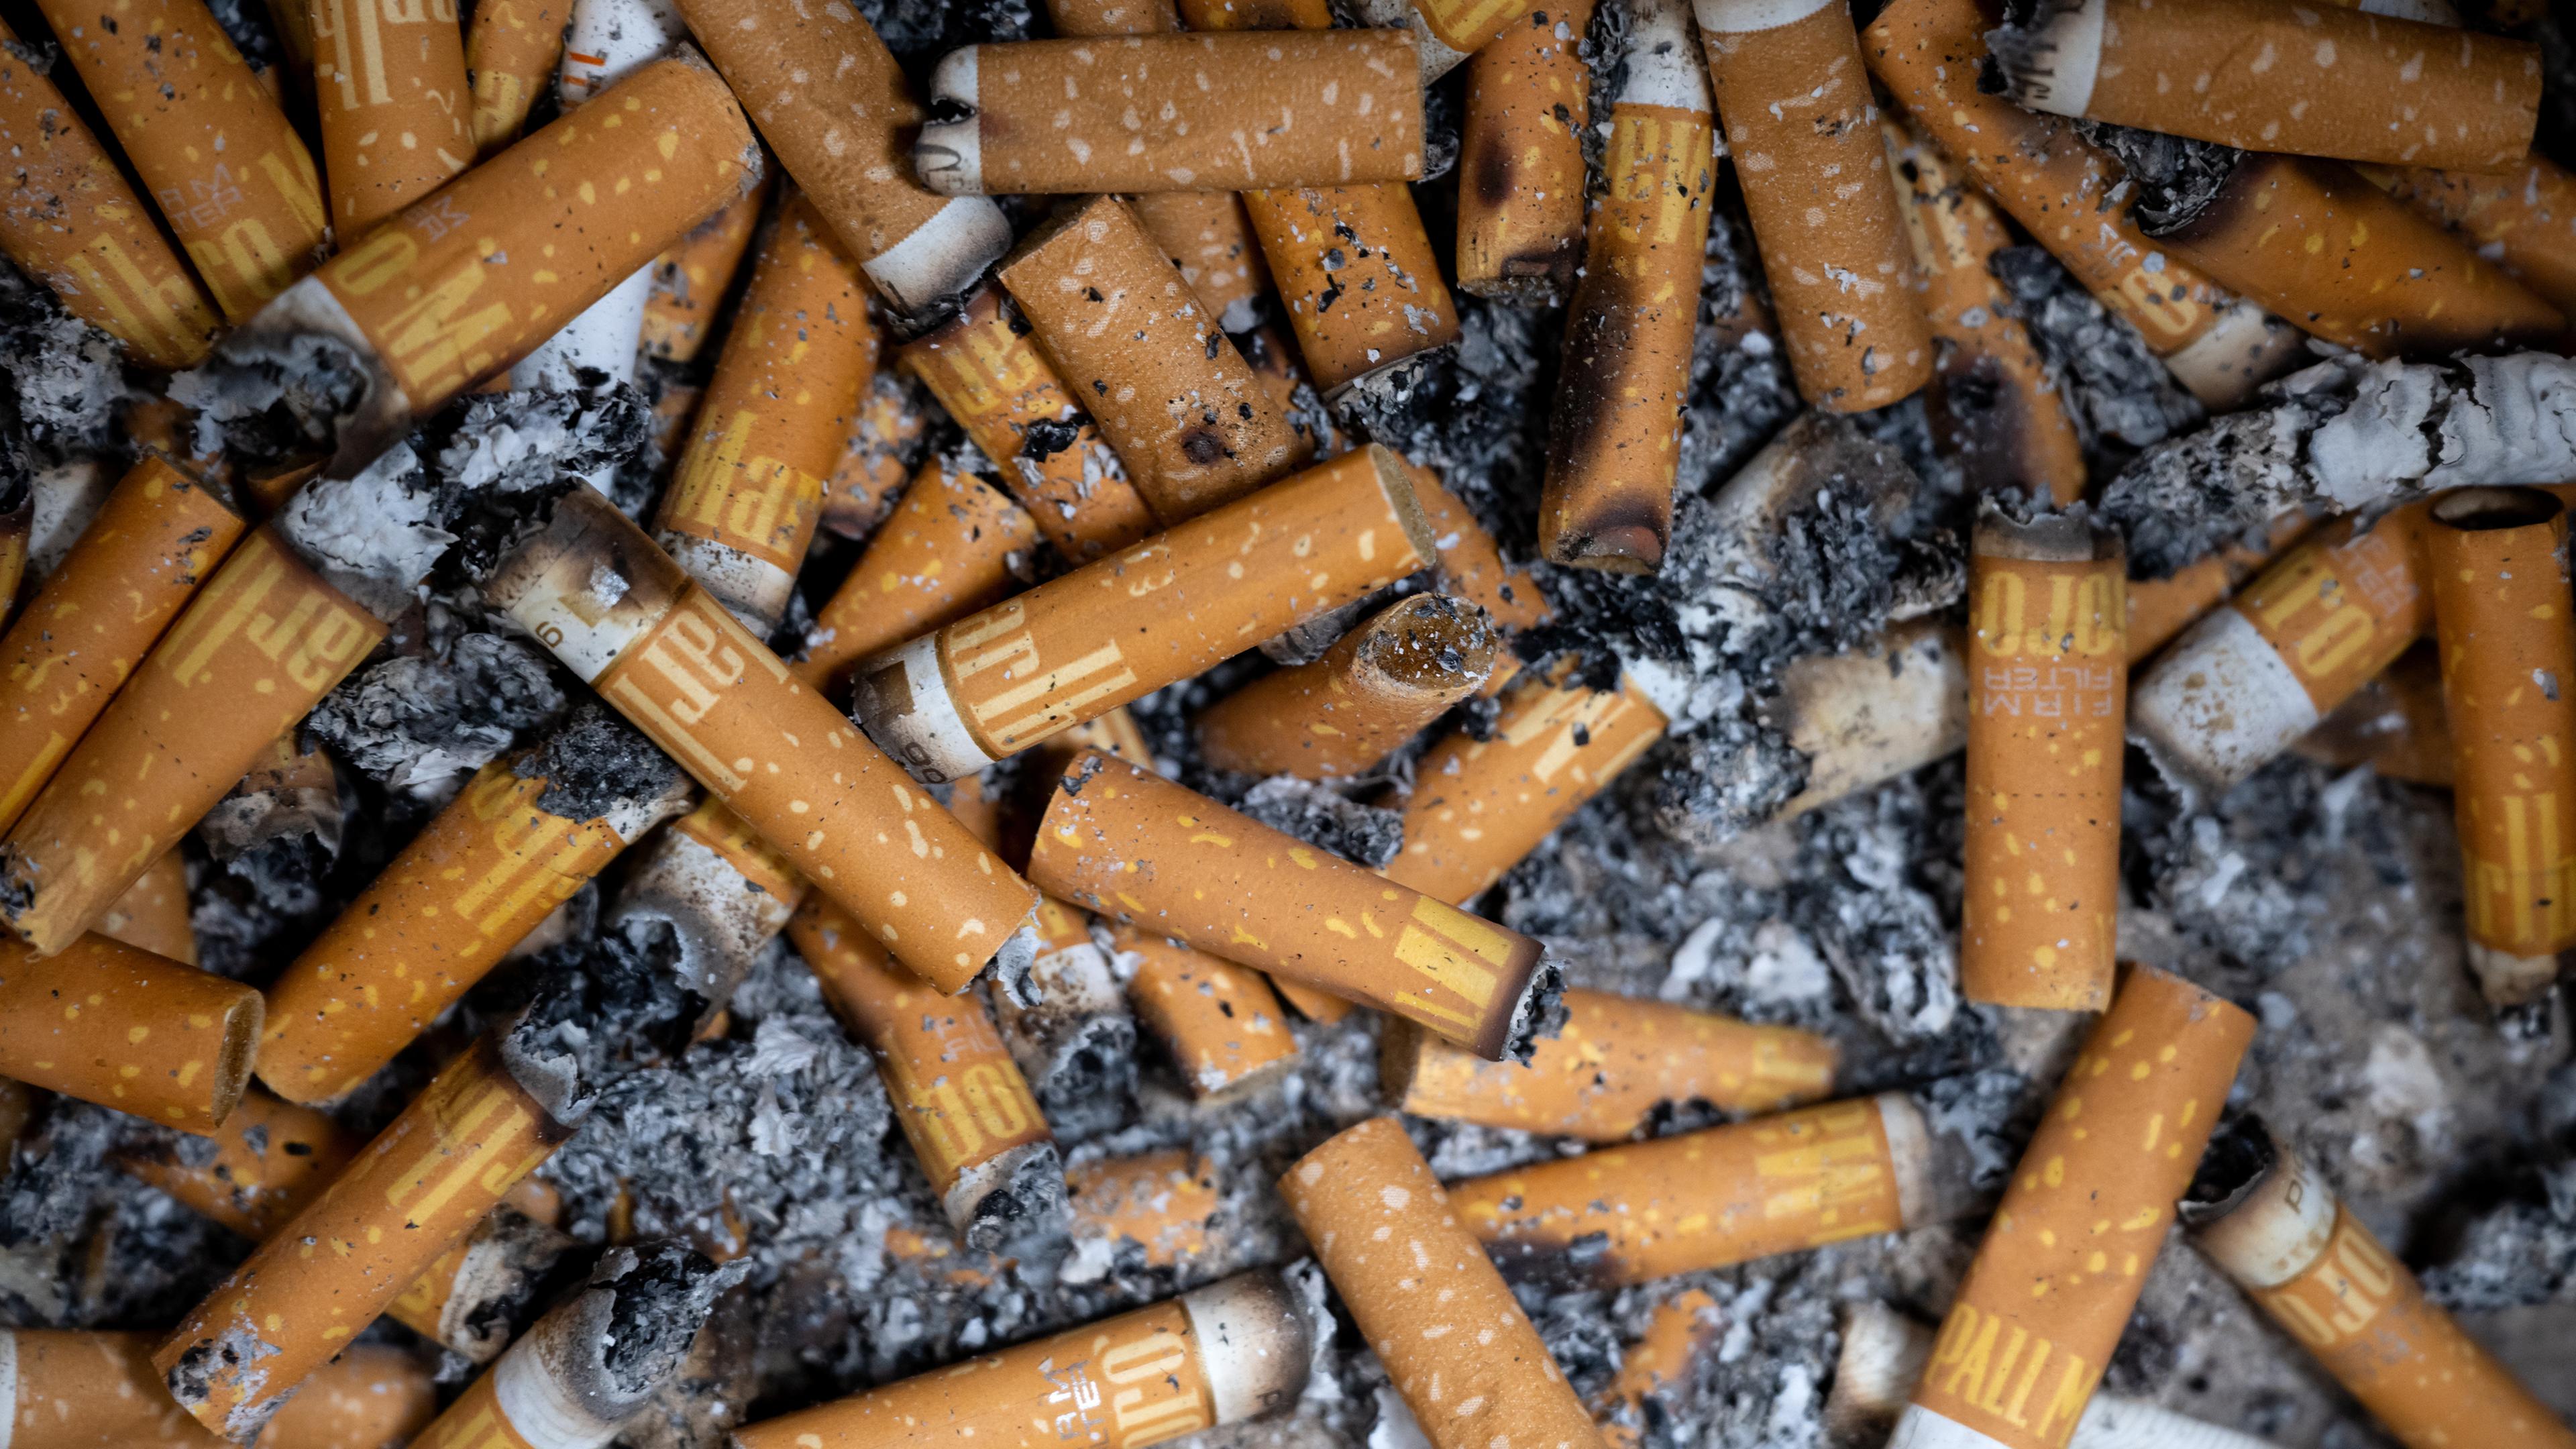 Bayern, München: Zahlreiche Zigarettenkippen liegen in einem Aschenbecher.